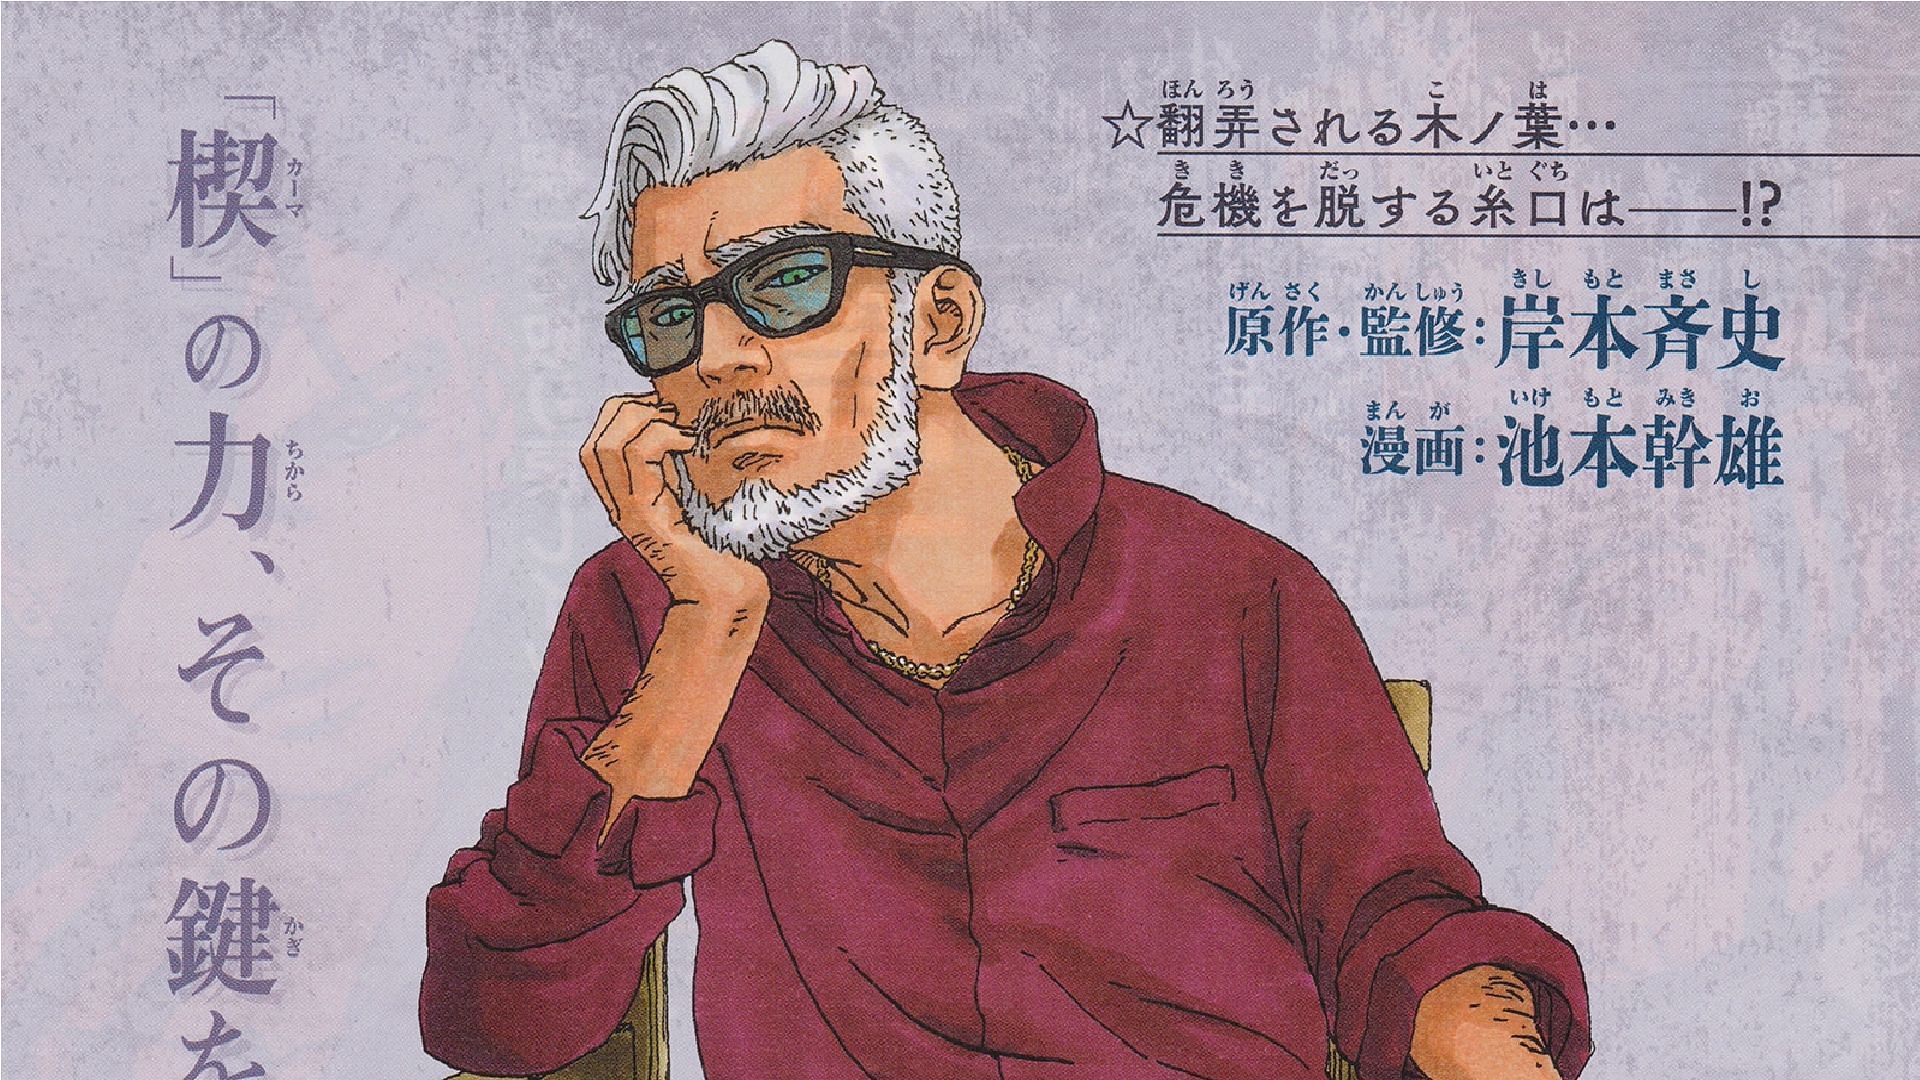 Amado on the cover of chapter 70 (Image via Masashi Kishimoto/Shueisha)